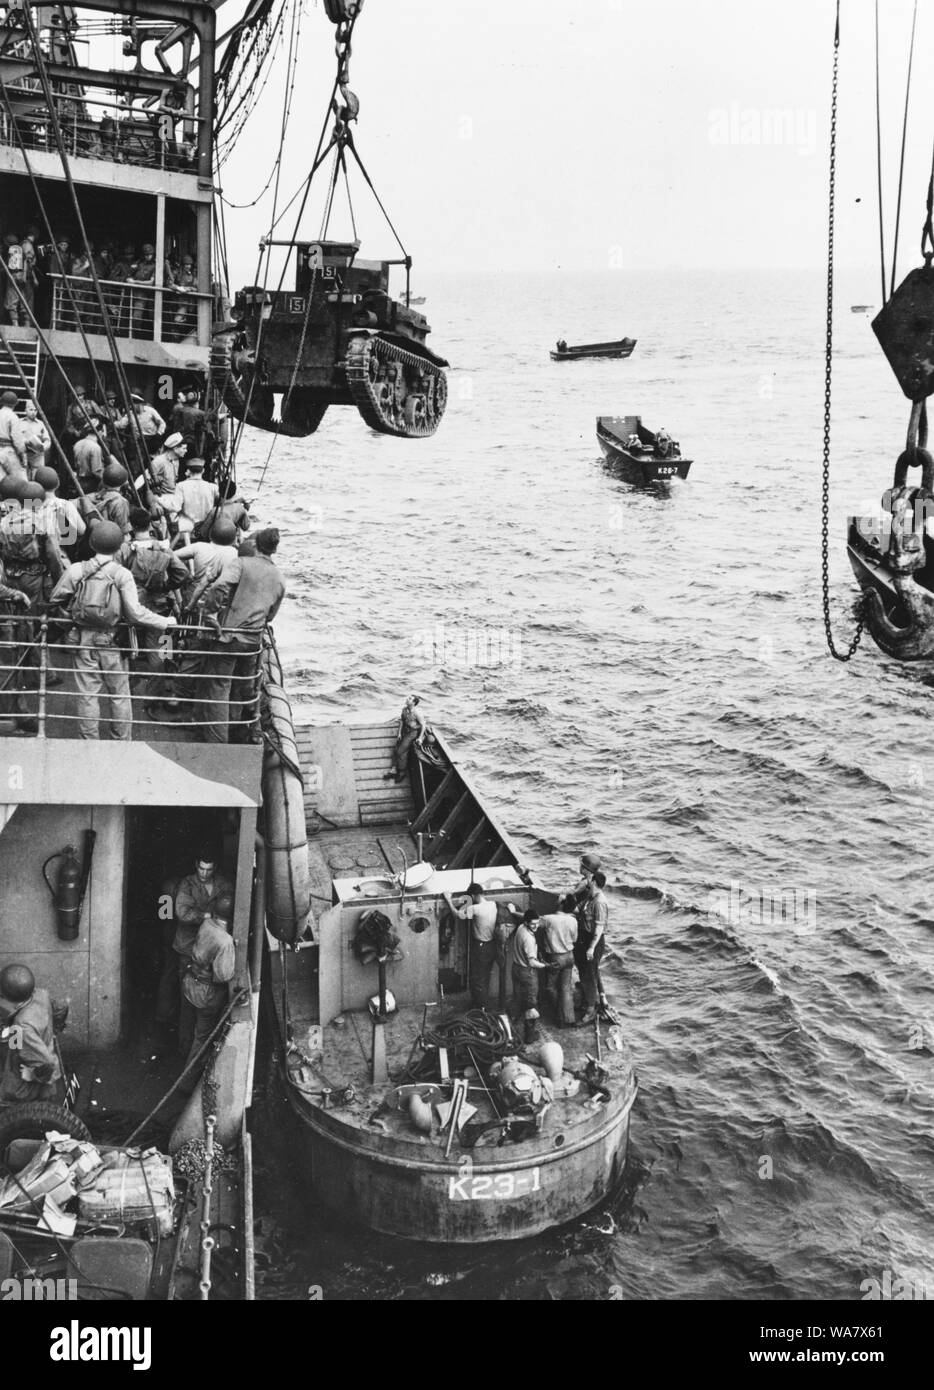 Guadalcanal-Tulagi Anlandungen, 7-9 August 1942. Ein U.S. Marine Corps M2A4 Stuart light Tank ist aus USS Alchiba (AK-23) in ein LCM(2) Landing Craft, die guadalcanal Invasion Strände am ersten Tag der Anlandungen, 7. August 1942 gehisst. Stockfoto